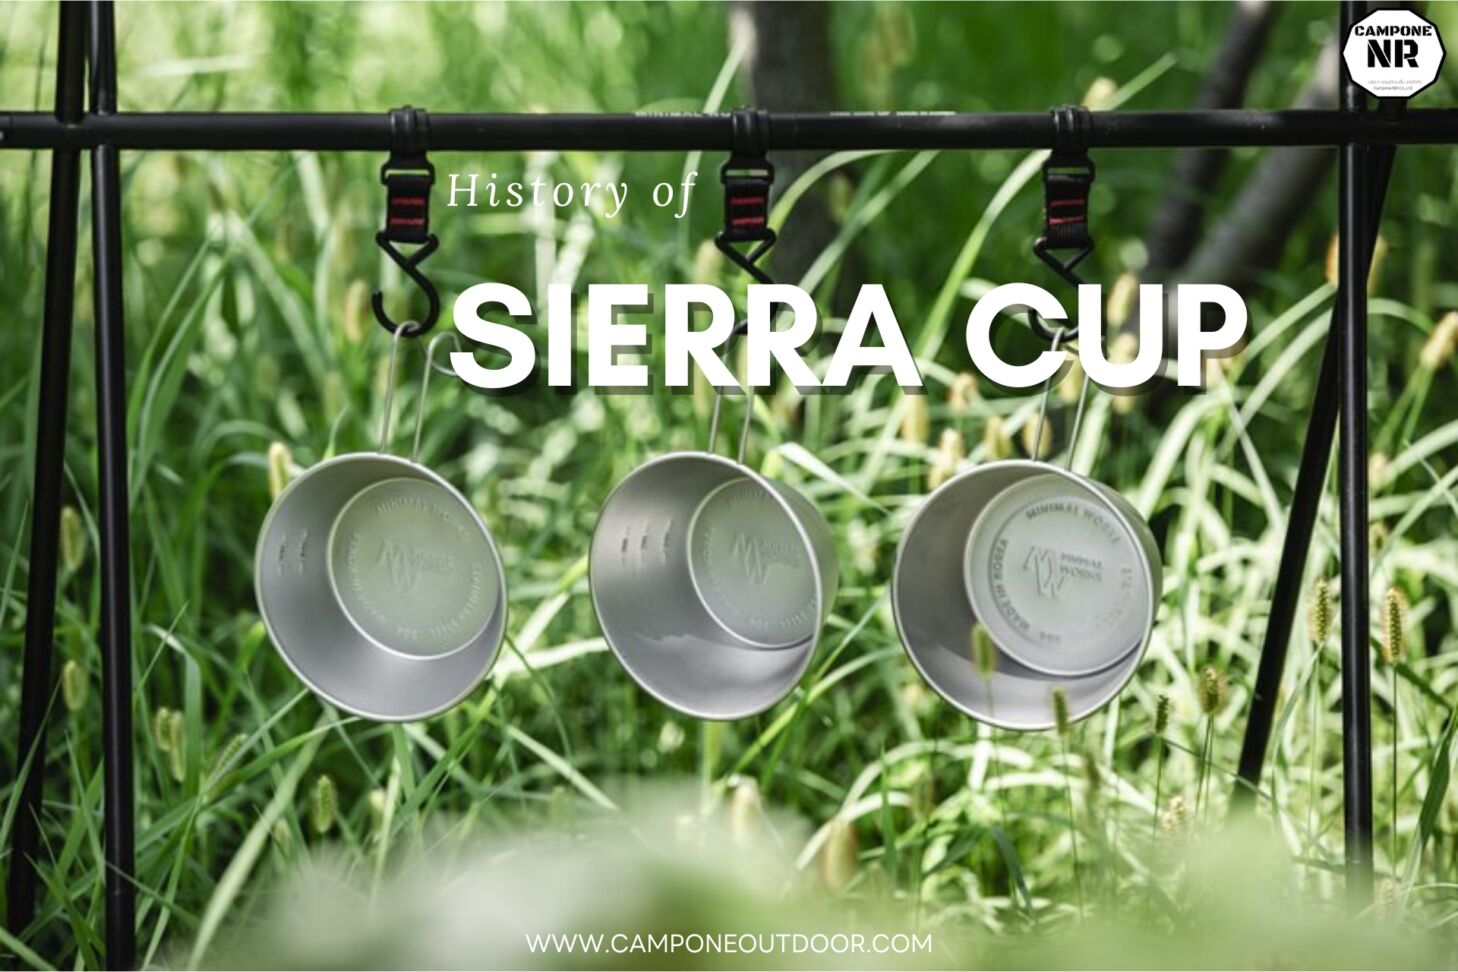 History of sierra cup